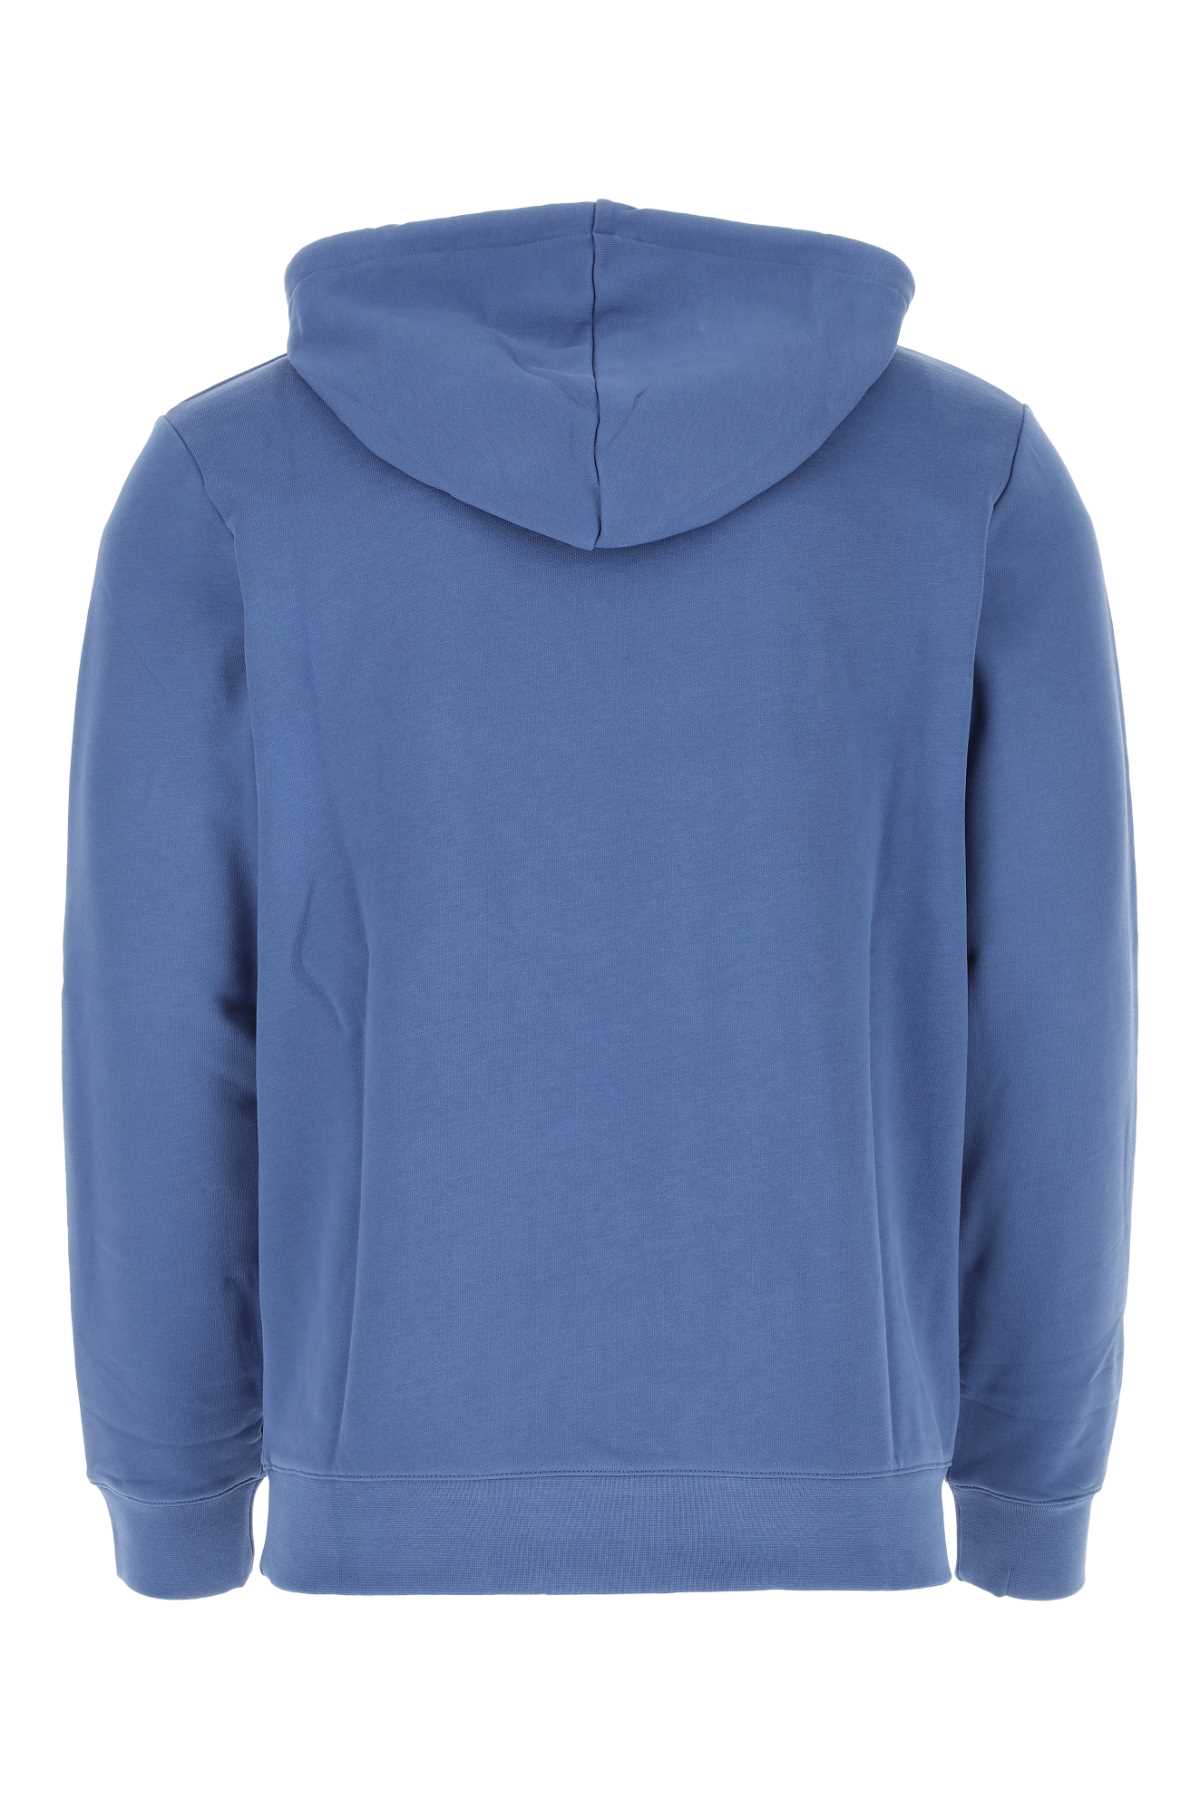 Shop Apc Air Force Blue Cotton Sweatshirt